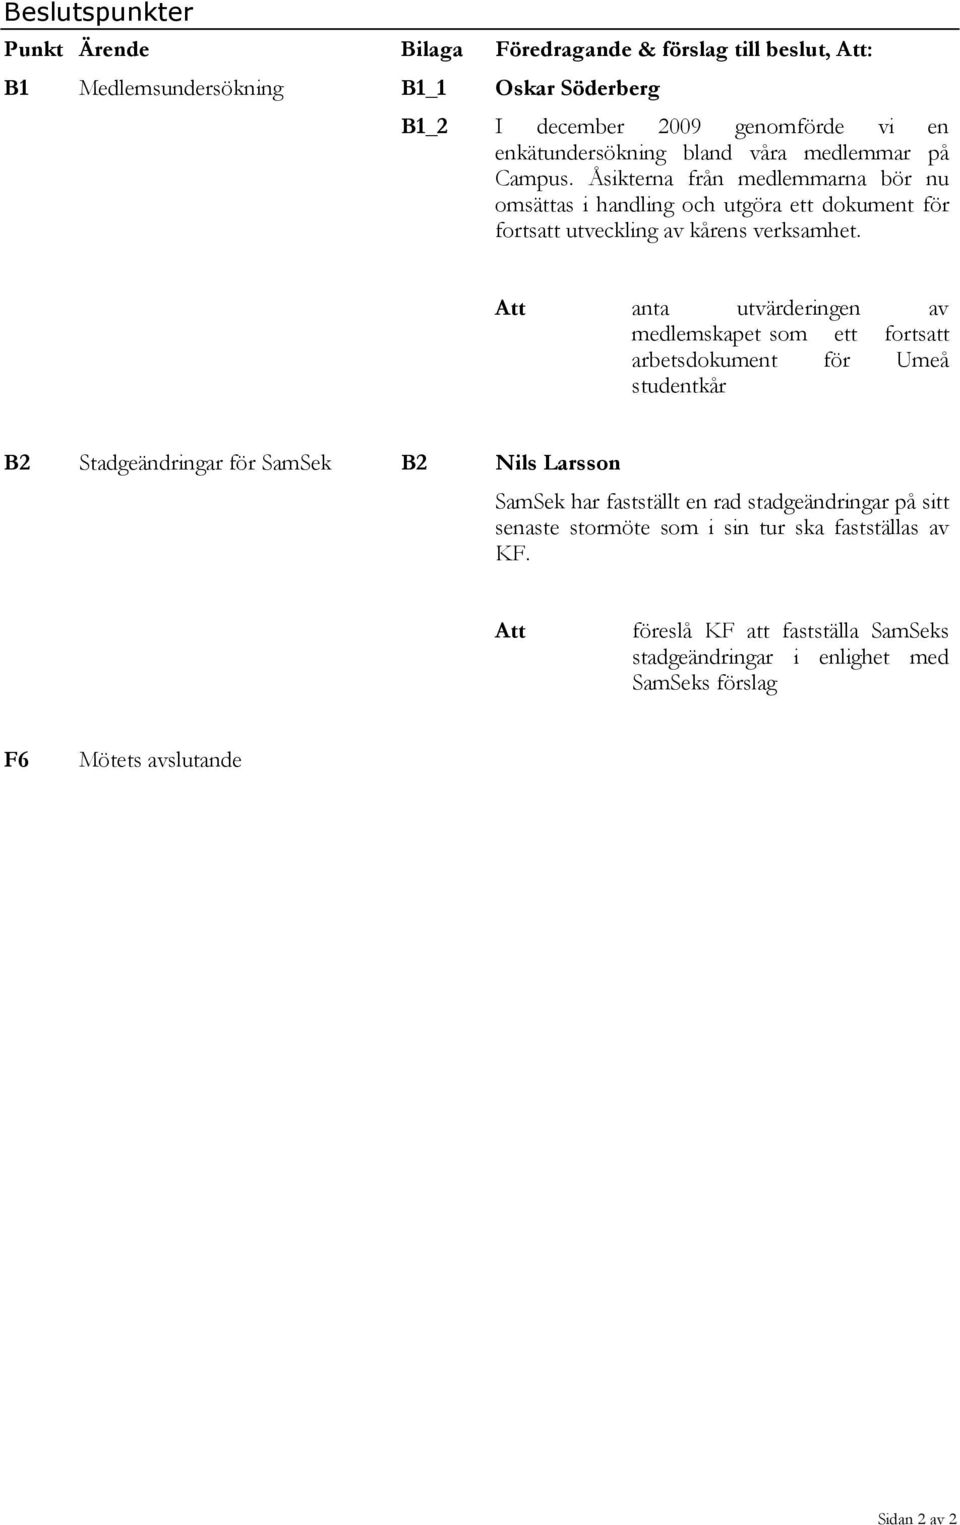 Att anta utvärderingen av medlemskapet som ett fortsatt arbetsdokument för Umeå studentkår B2 Stadgeändringar för SamSek B2 Nils Larsson SamSek har fastställt en rad